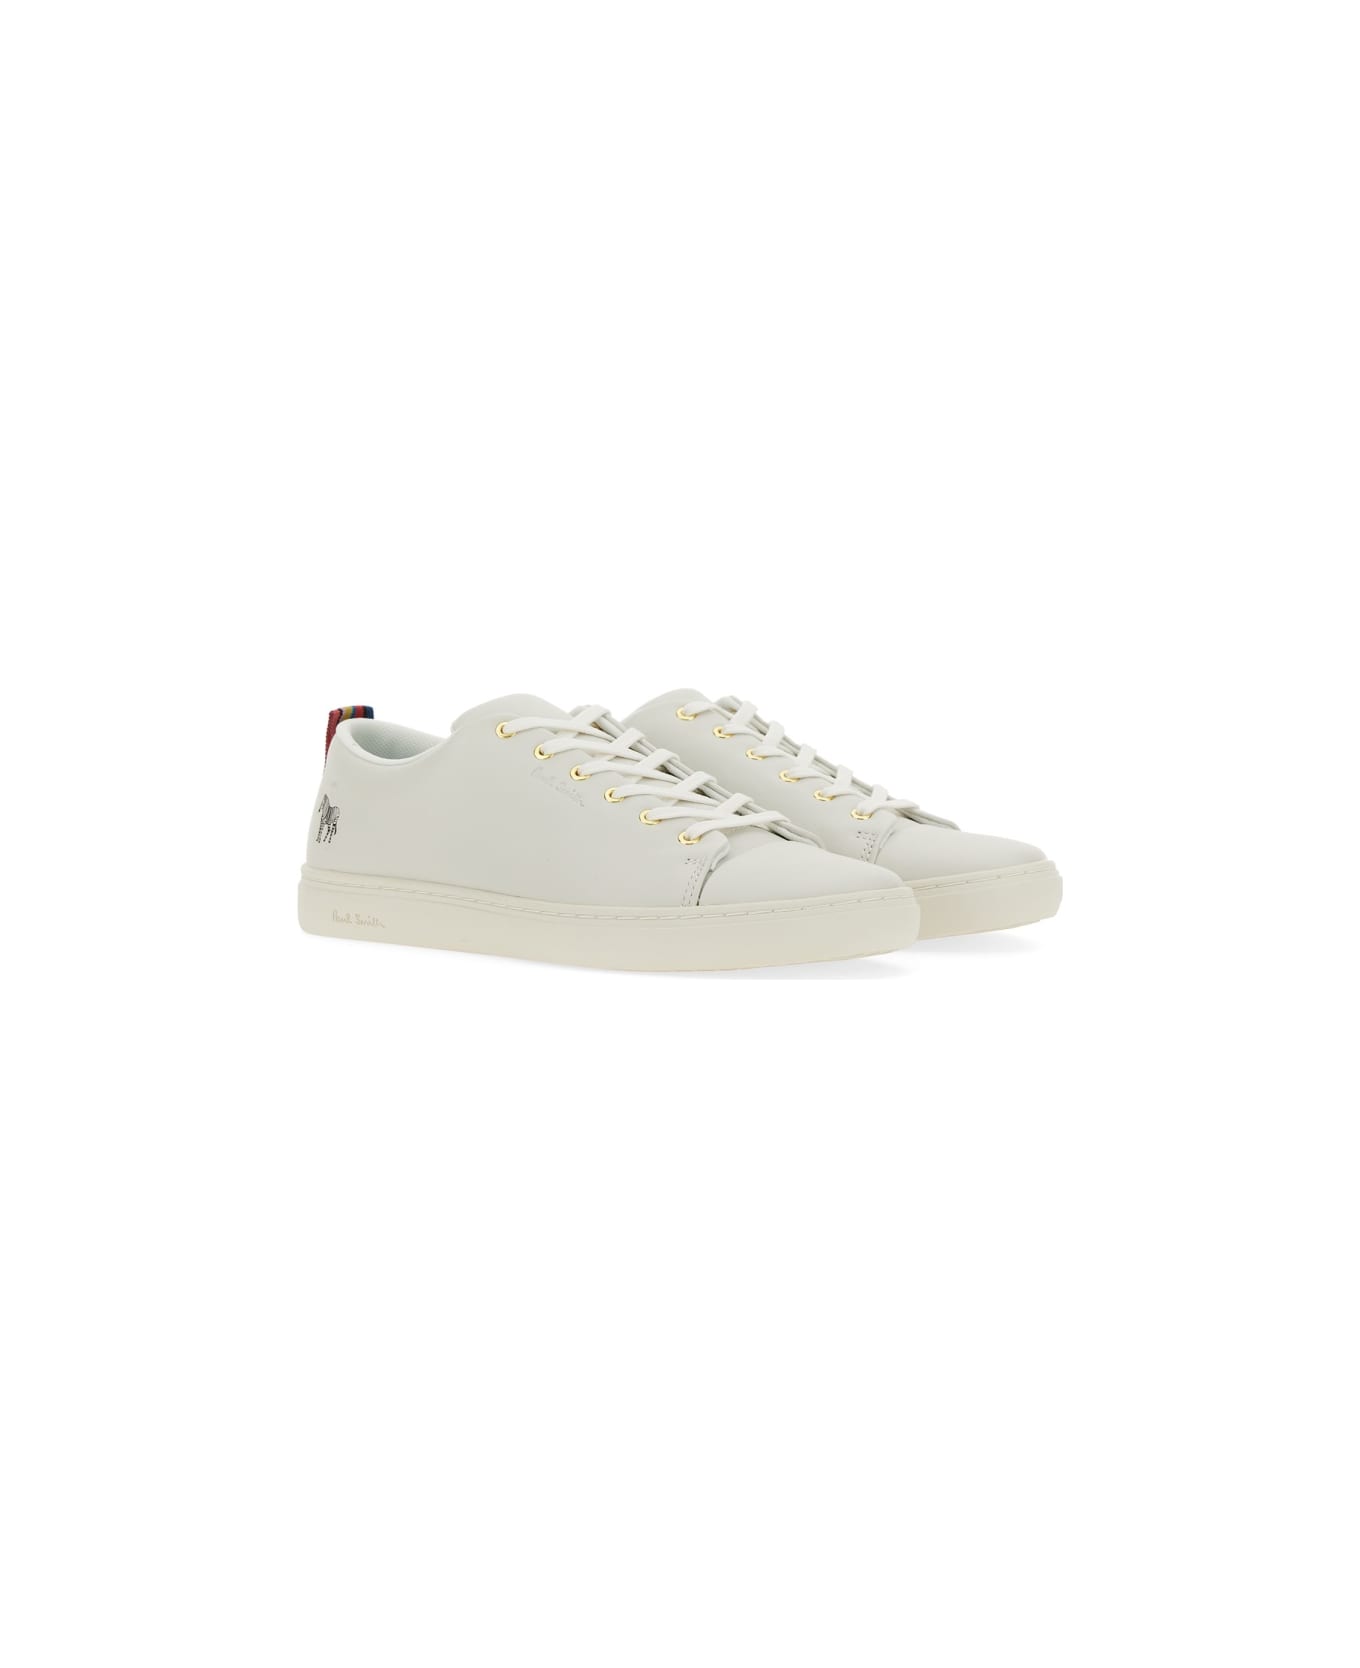 Paul Smith Sneaker "lee" - WHITE スニーカー